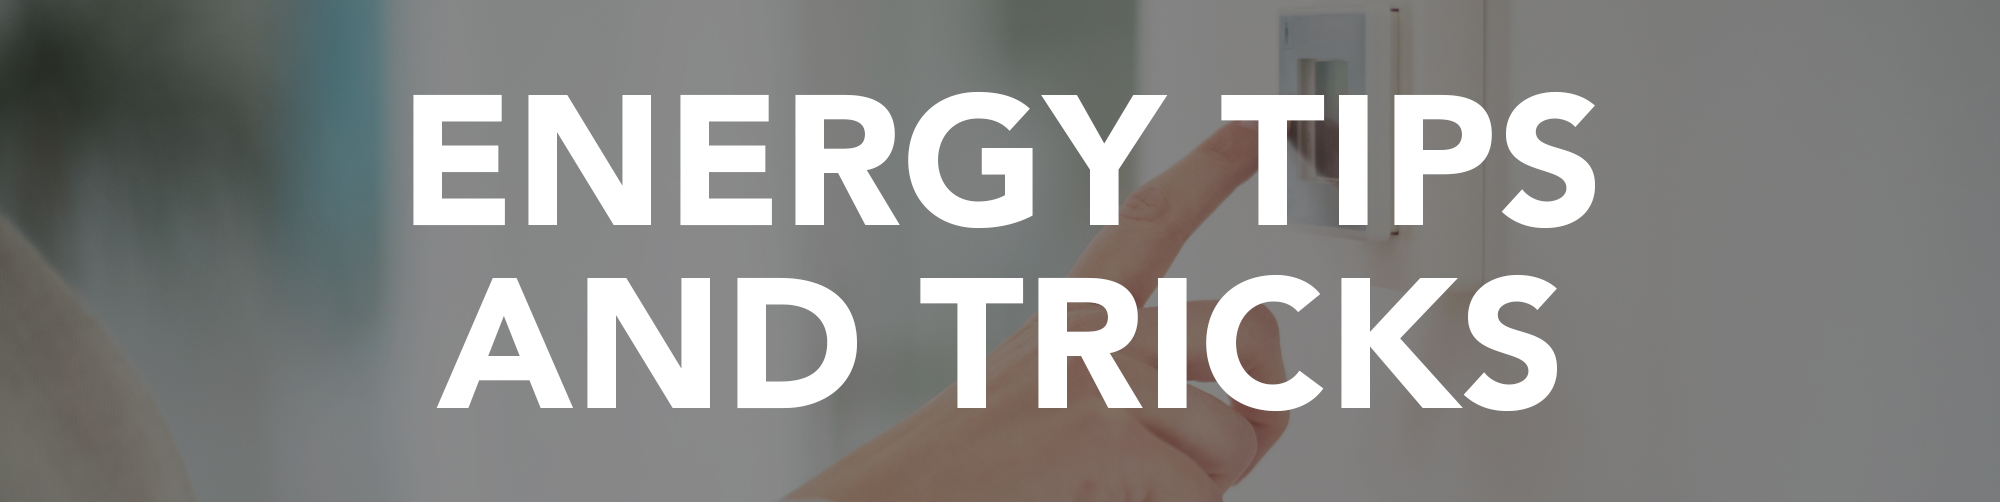 MCE Tipps und Tricks zu sauberer Energie